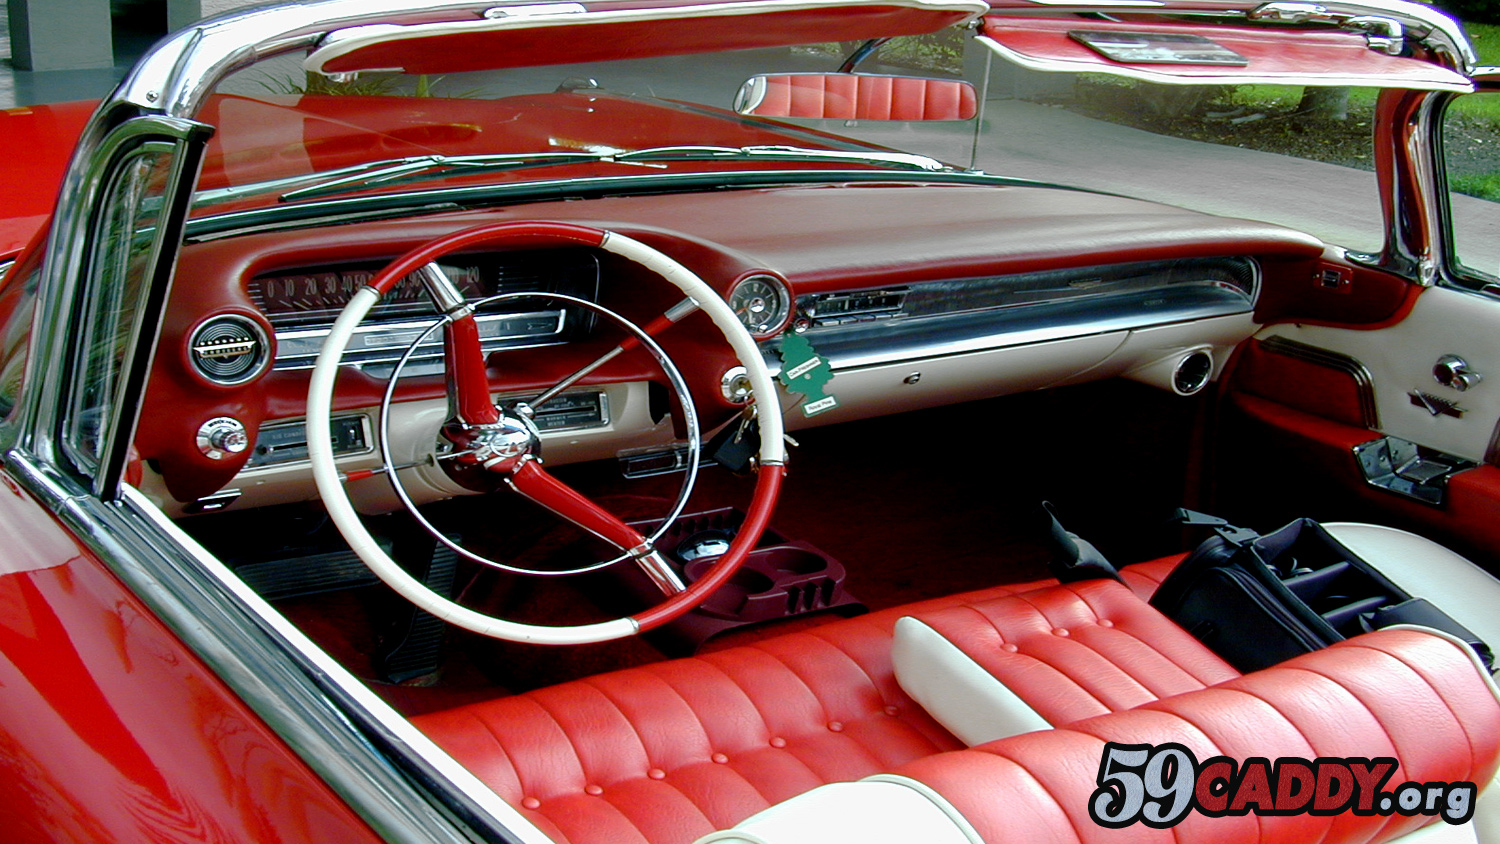 Red 1959 Cadillac Convertible 1959 Red Cadillac Convertible